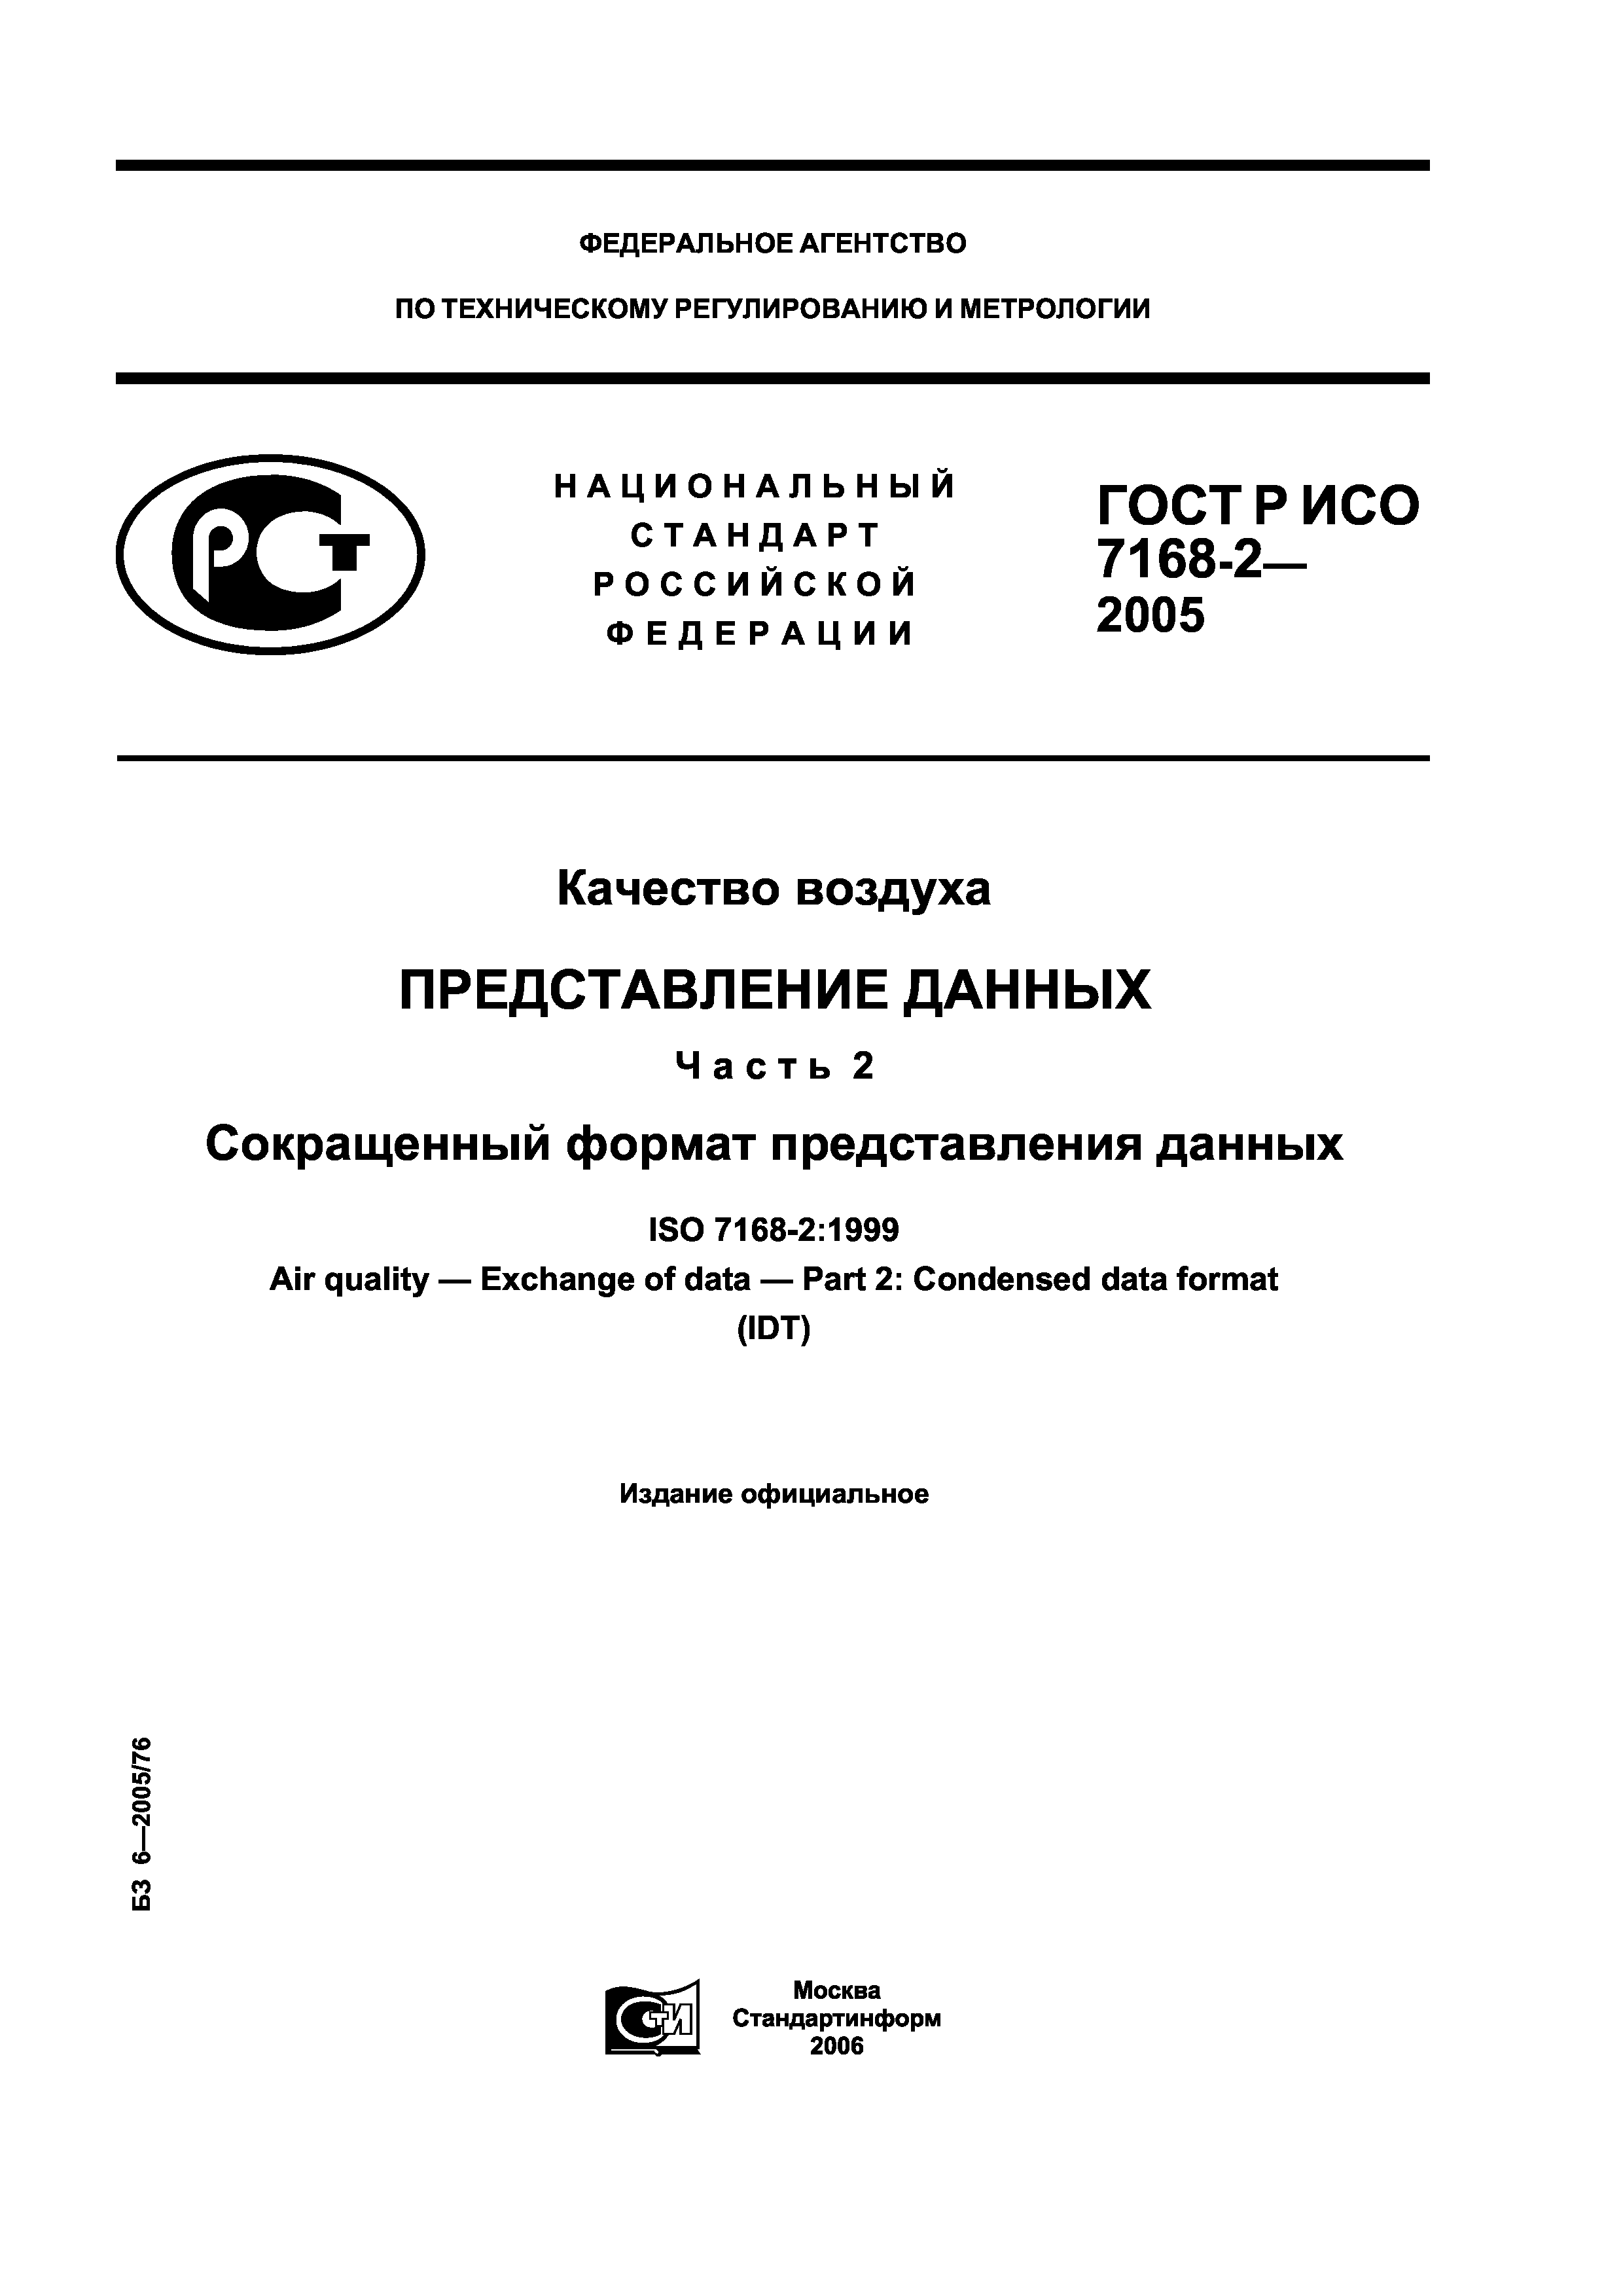 ГОСТ Р ИСО 7168-2-2005